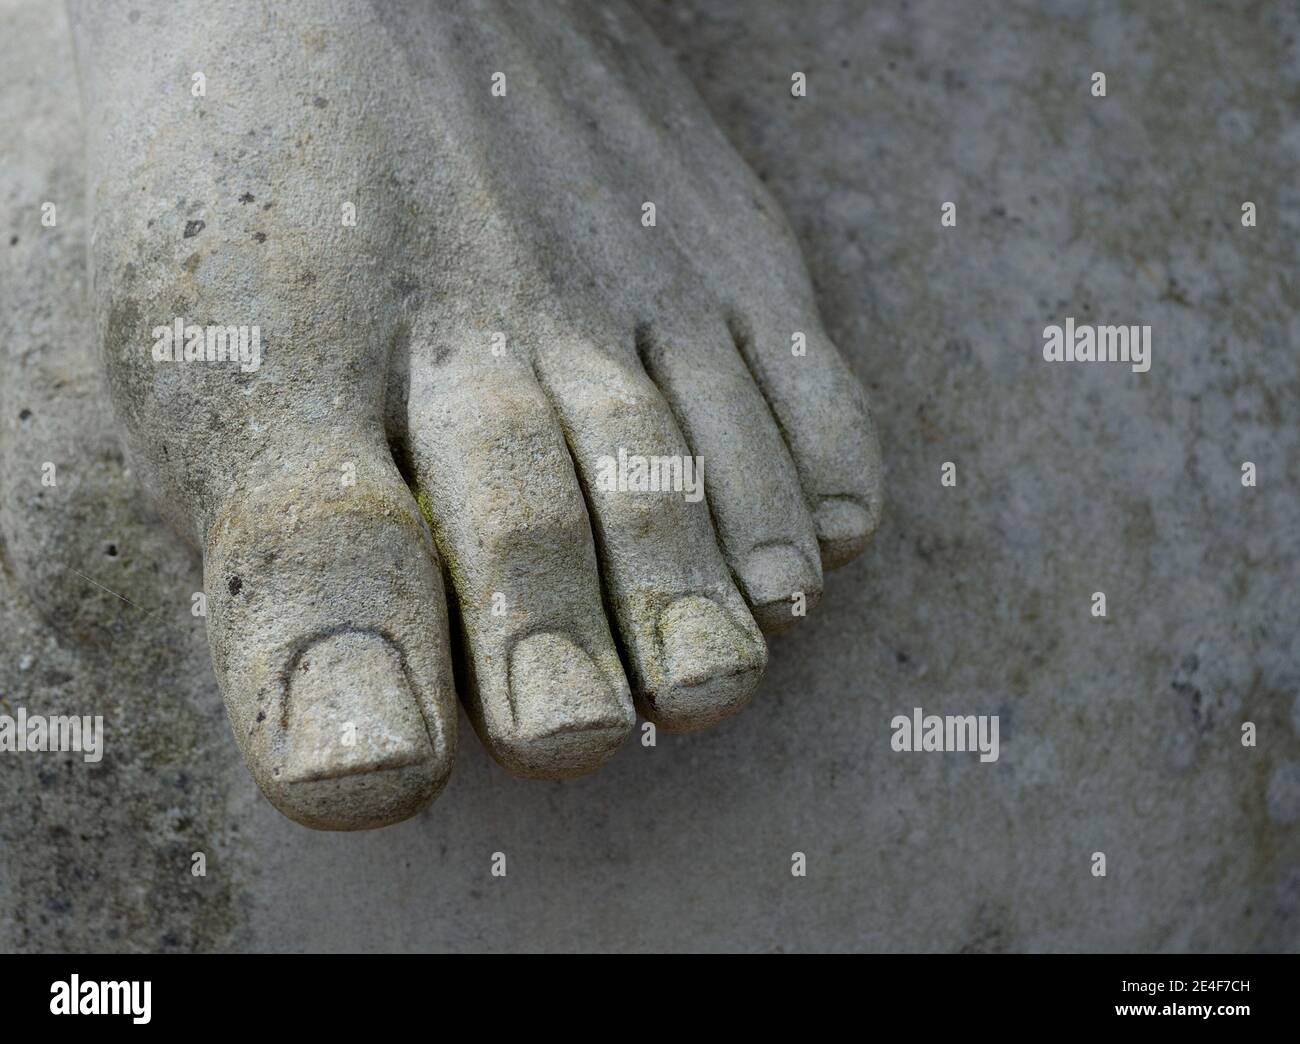 Detalle del pie de la estatua de los dedos de los pies y las uñas de los pies Foto de stock